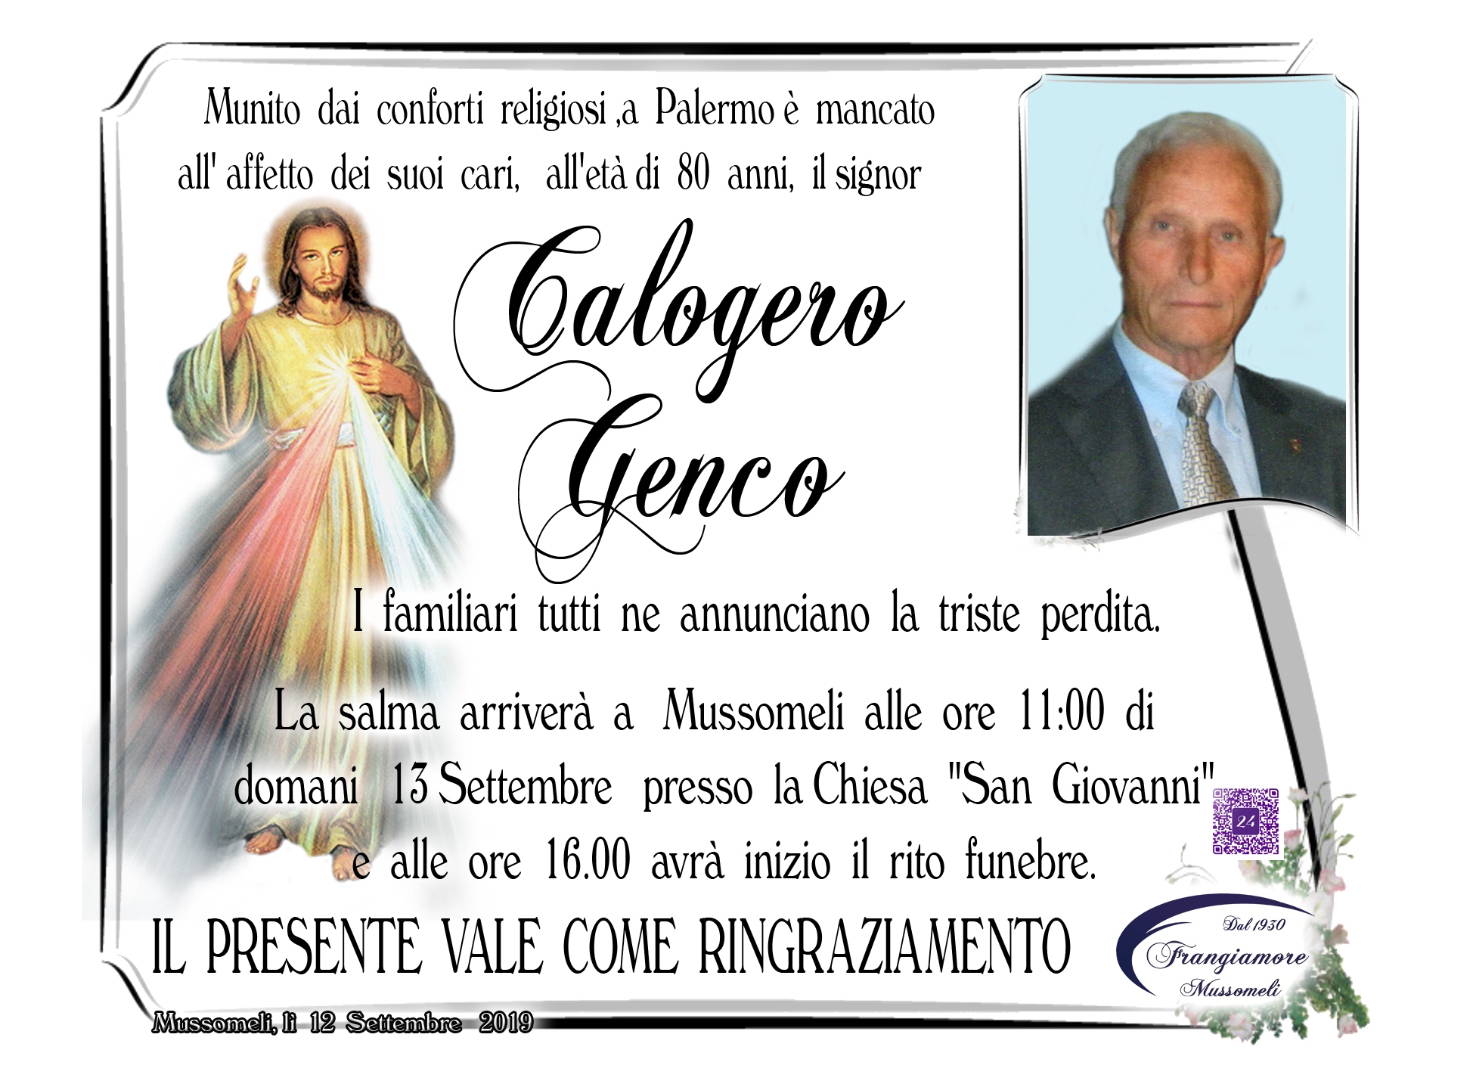 Calogero Genco